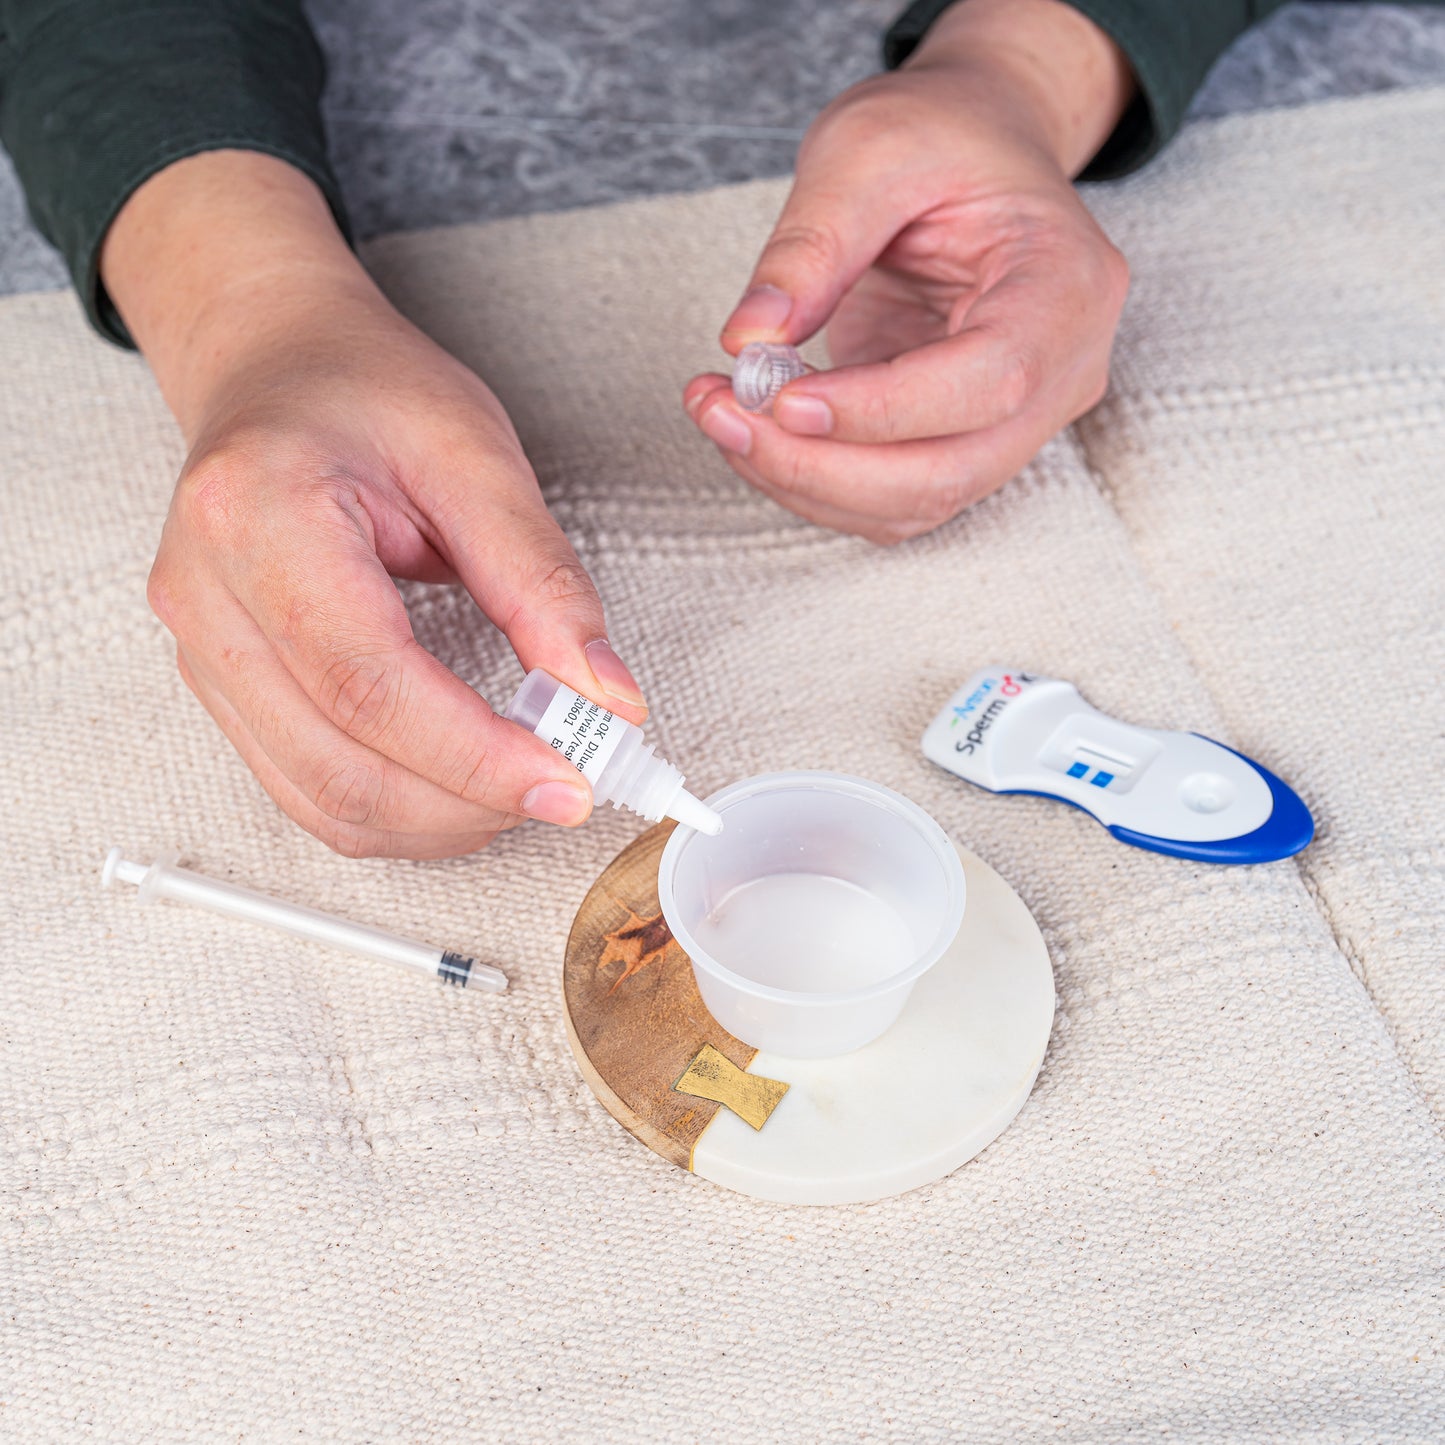 twoplus Sperm Test Kit - Usage